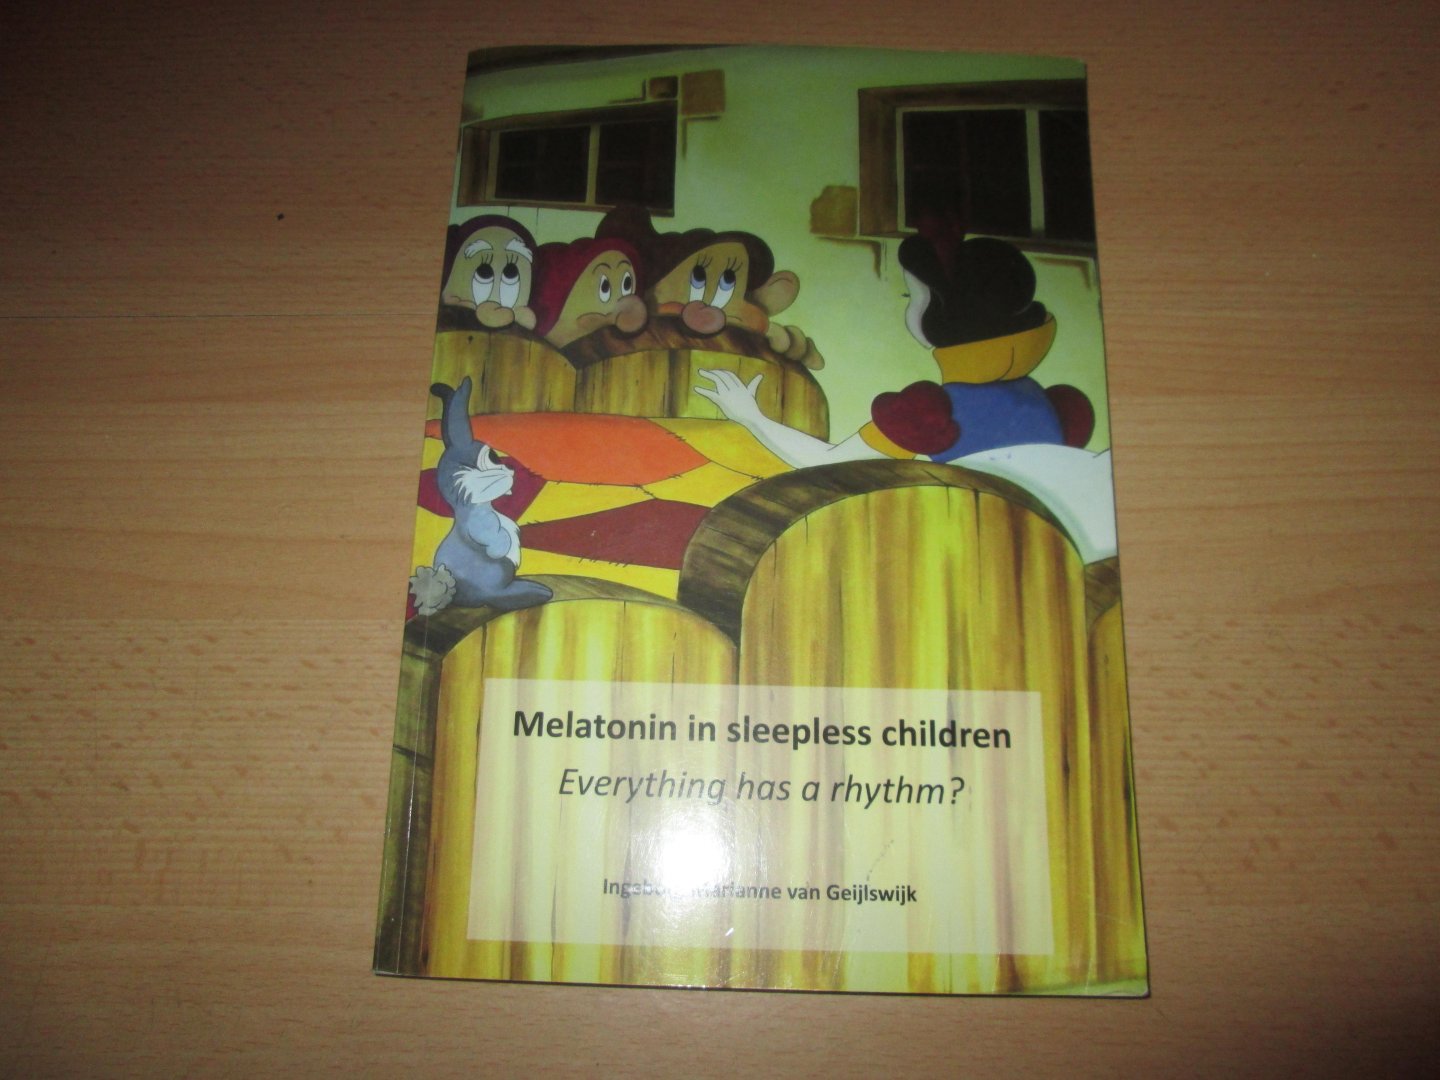 Geijlswijk , dr. Ingeborg Marianne van - MELATONIN IN SLEEPLESS CHILDREN - Everything has a rhythm ? [ diss.]